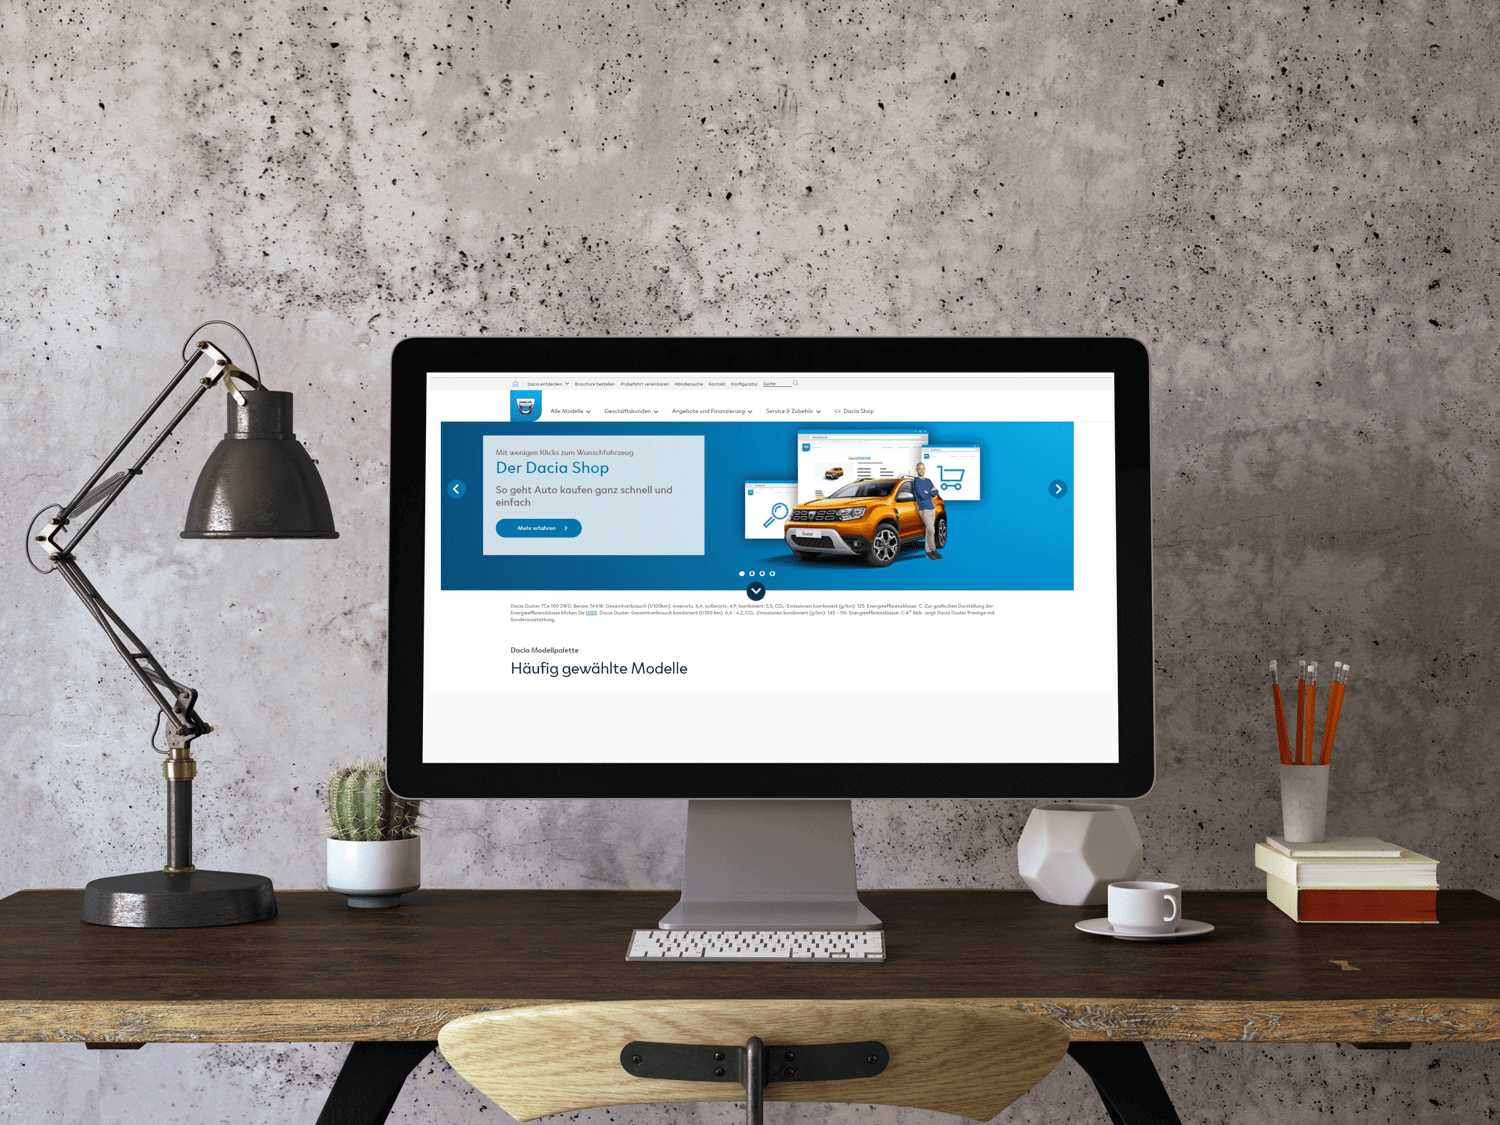 Le site Dacia Online shop sur un ordinateur